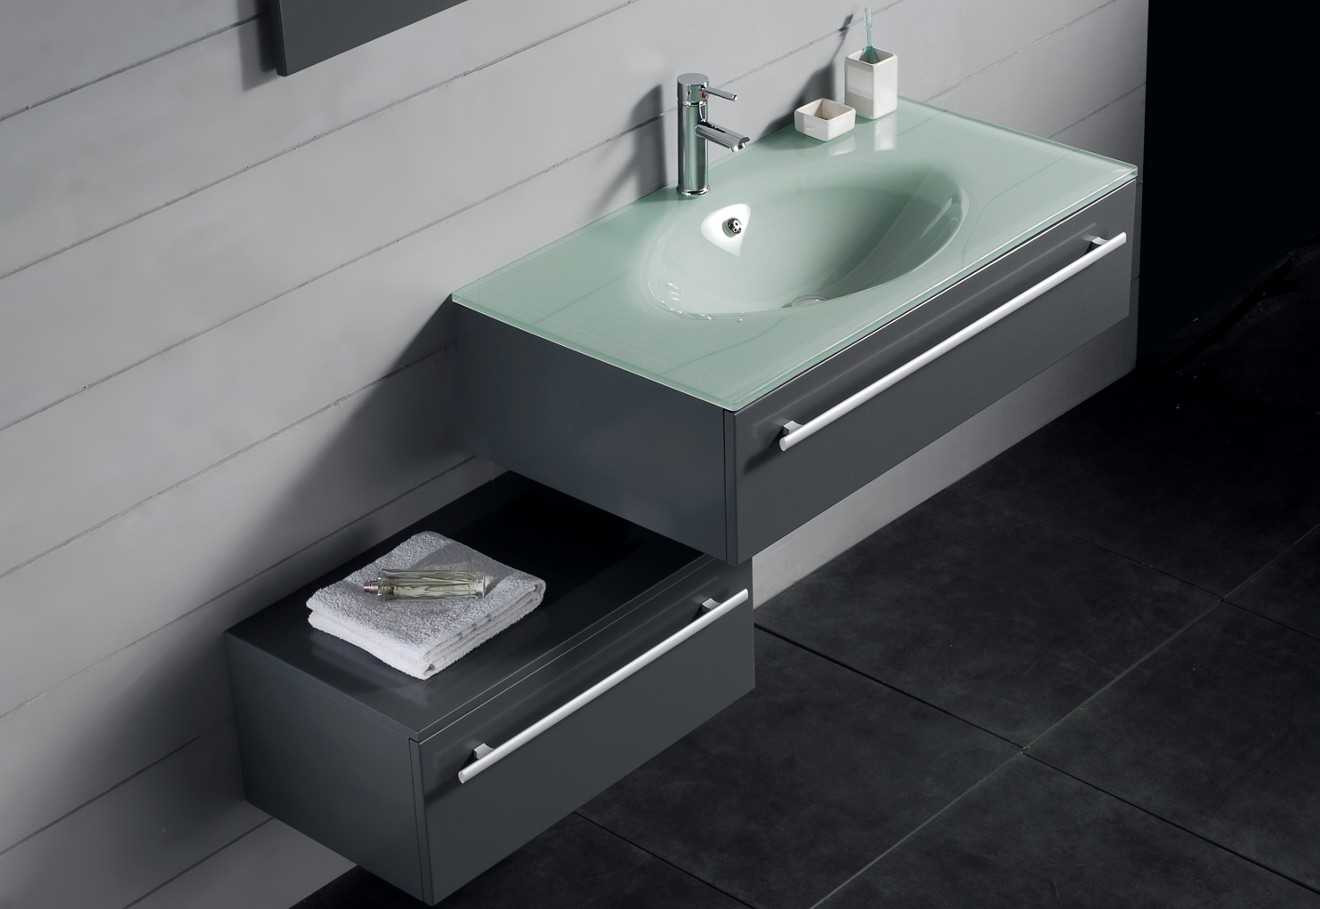 The Kitchen Sink 2018
 Modern Sink Cabinets For Bathrooms Basin Kitchen Bath 2018